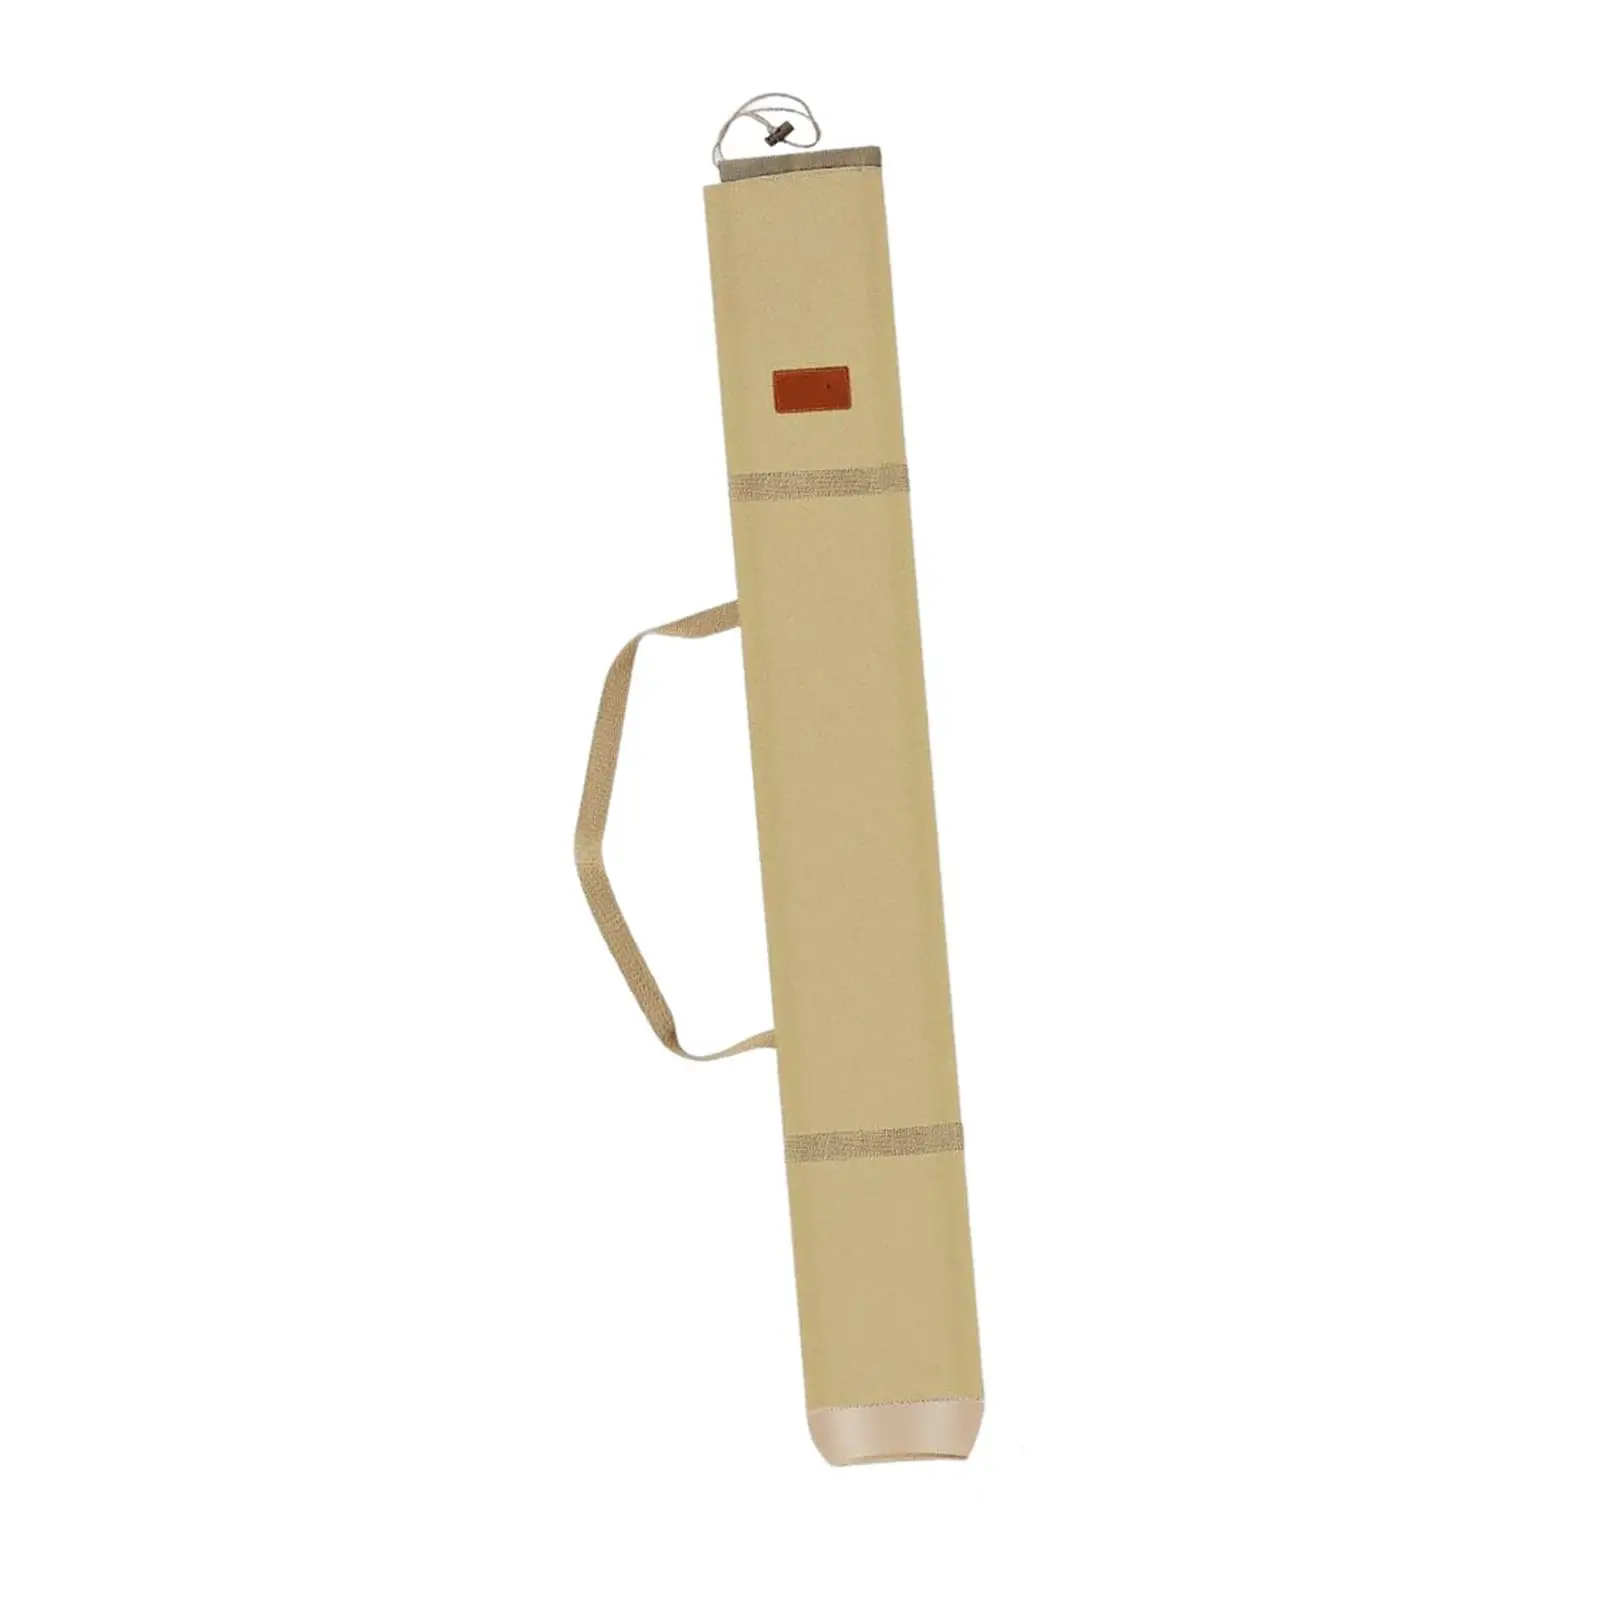 Elastic Closing Design Fishing Pole Bag Folding for Hiking Fishing Umbrellas